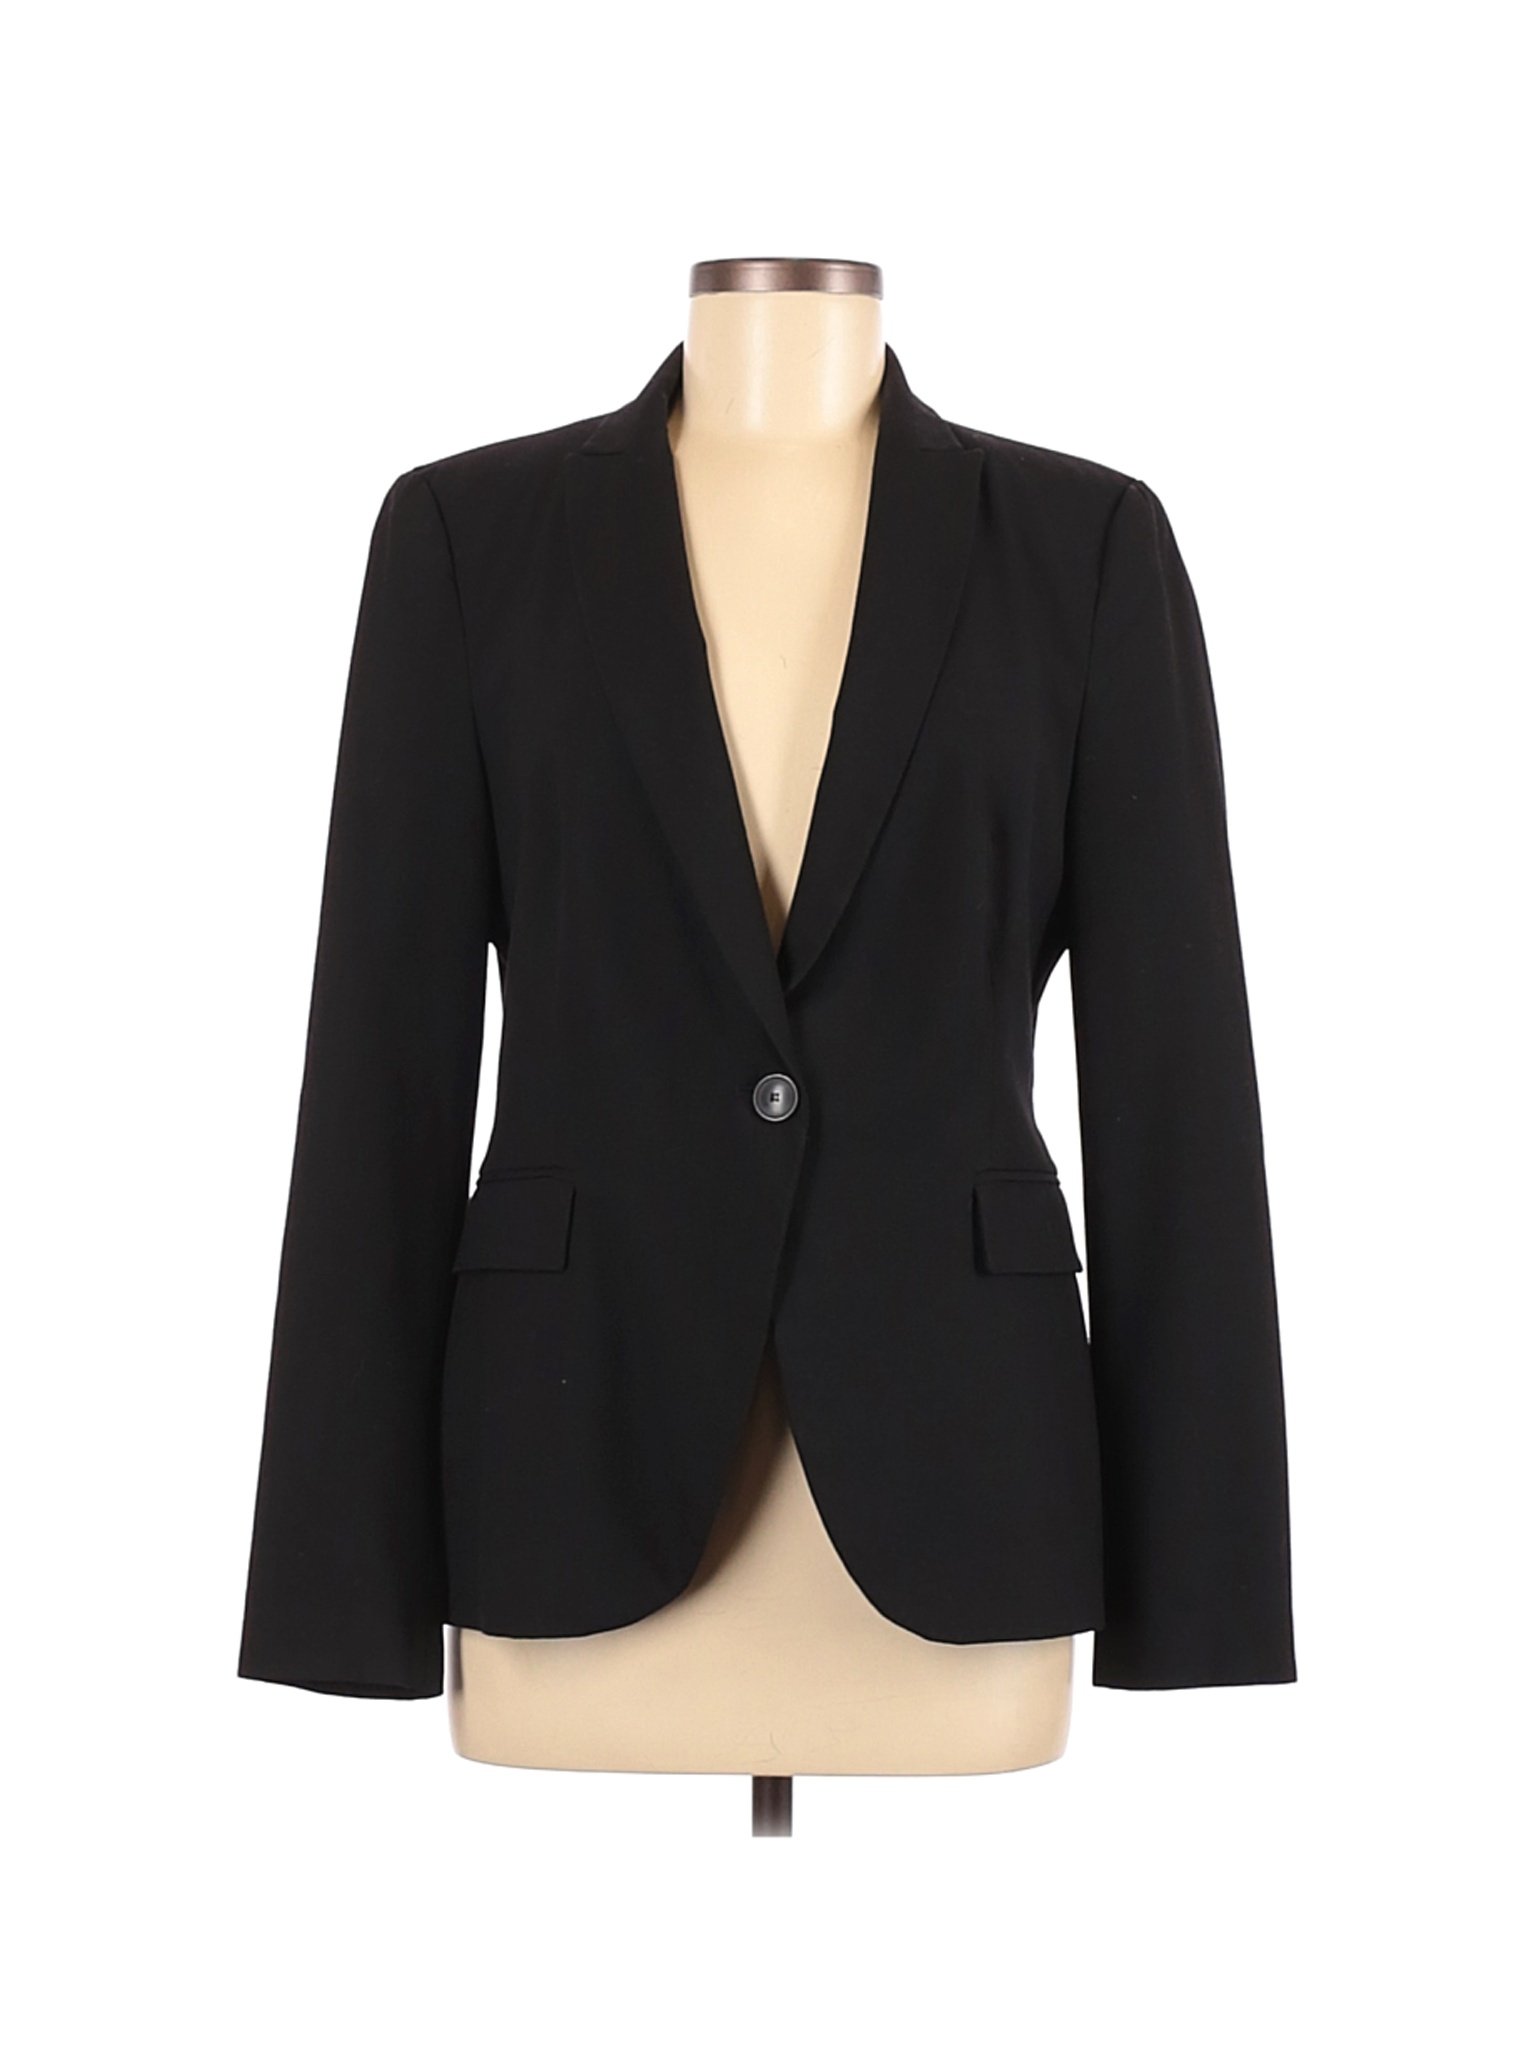 Zara Basic Women Black Blazer 8 | eBay